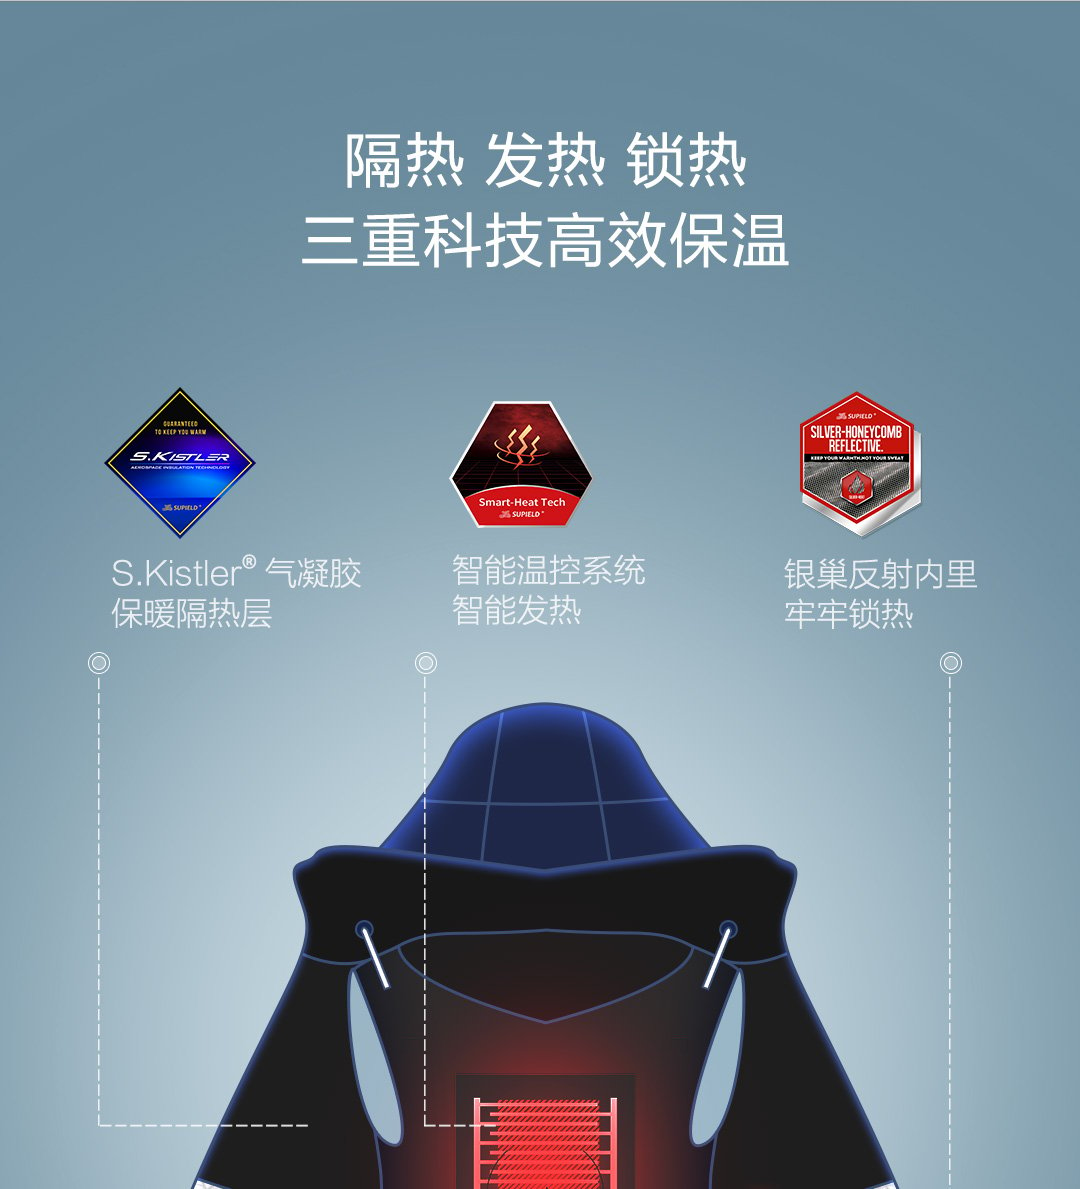 لفصل الشتاء ، تقوم Xiaomi بتمويل سترة Supield + Airgel Heater المقاومة للبرودة